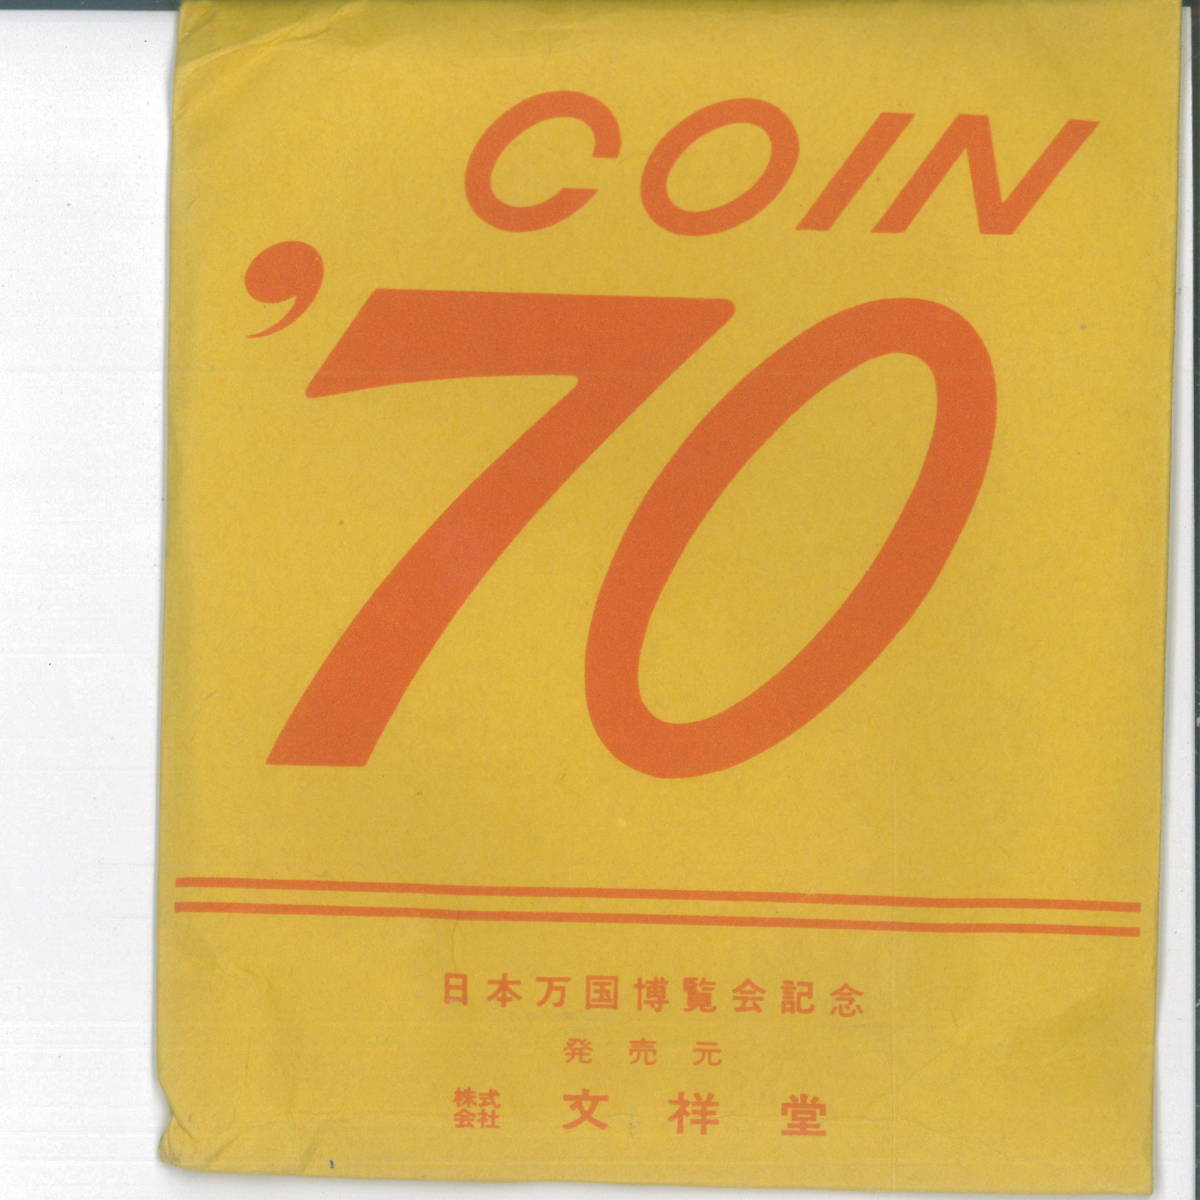  медаль кейс ячейка для монет [60 шт ] Osaka всемирная выставка EXPO\'70 память медаль inserting 1970 год 